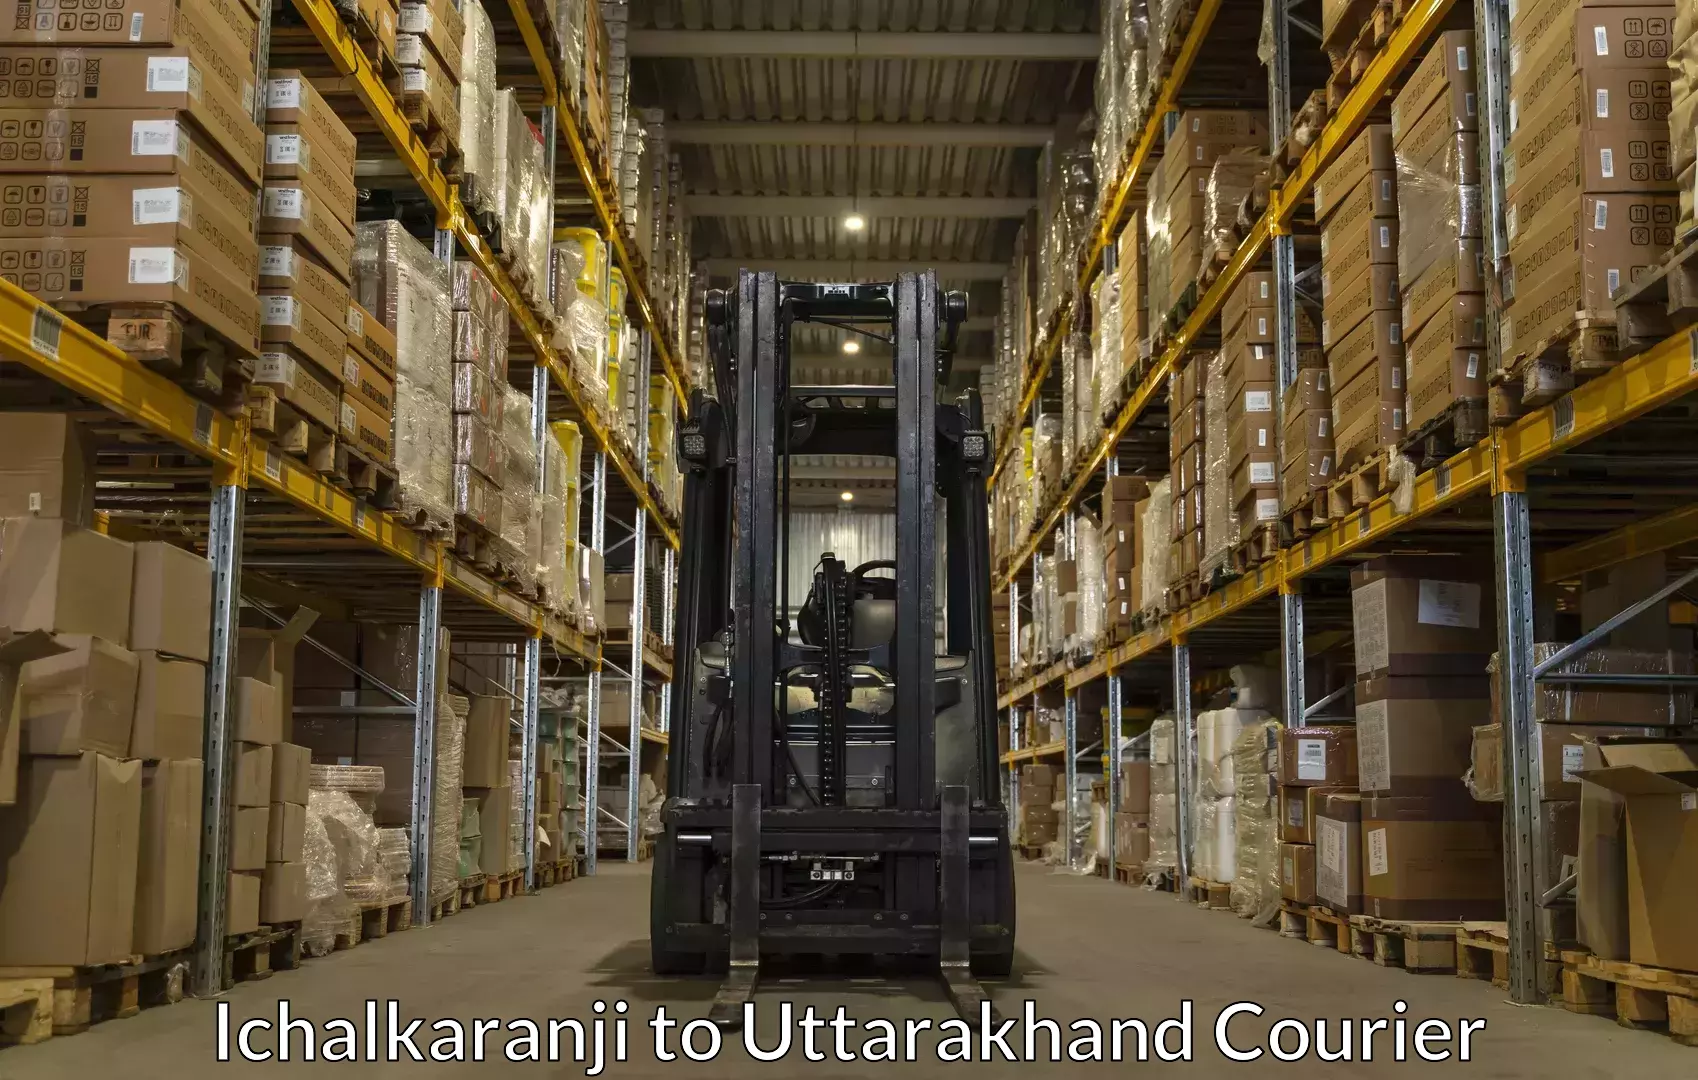 Luggage shipping guide Ichalkaranji to Srinagar Pauri Garhwal